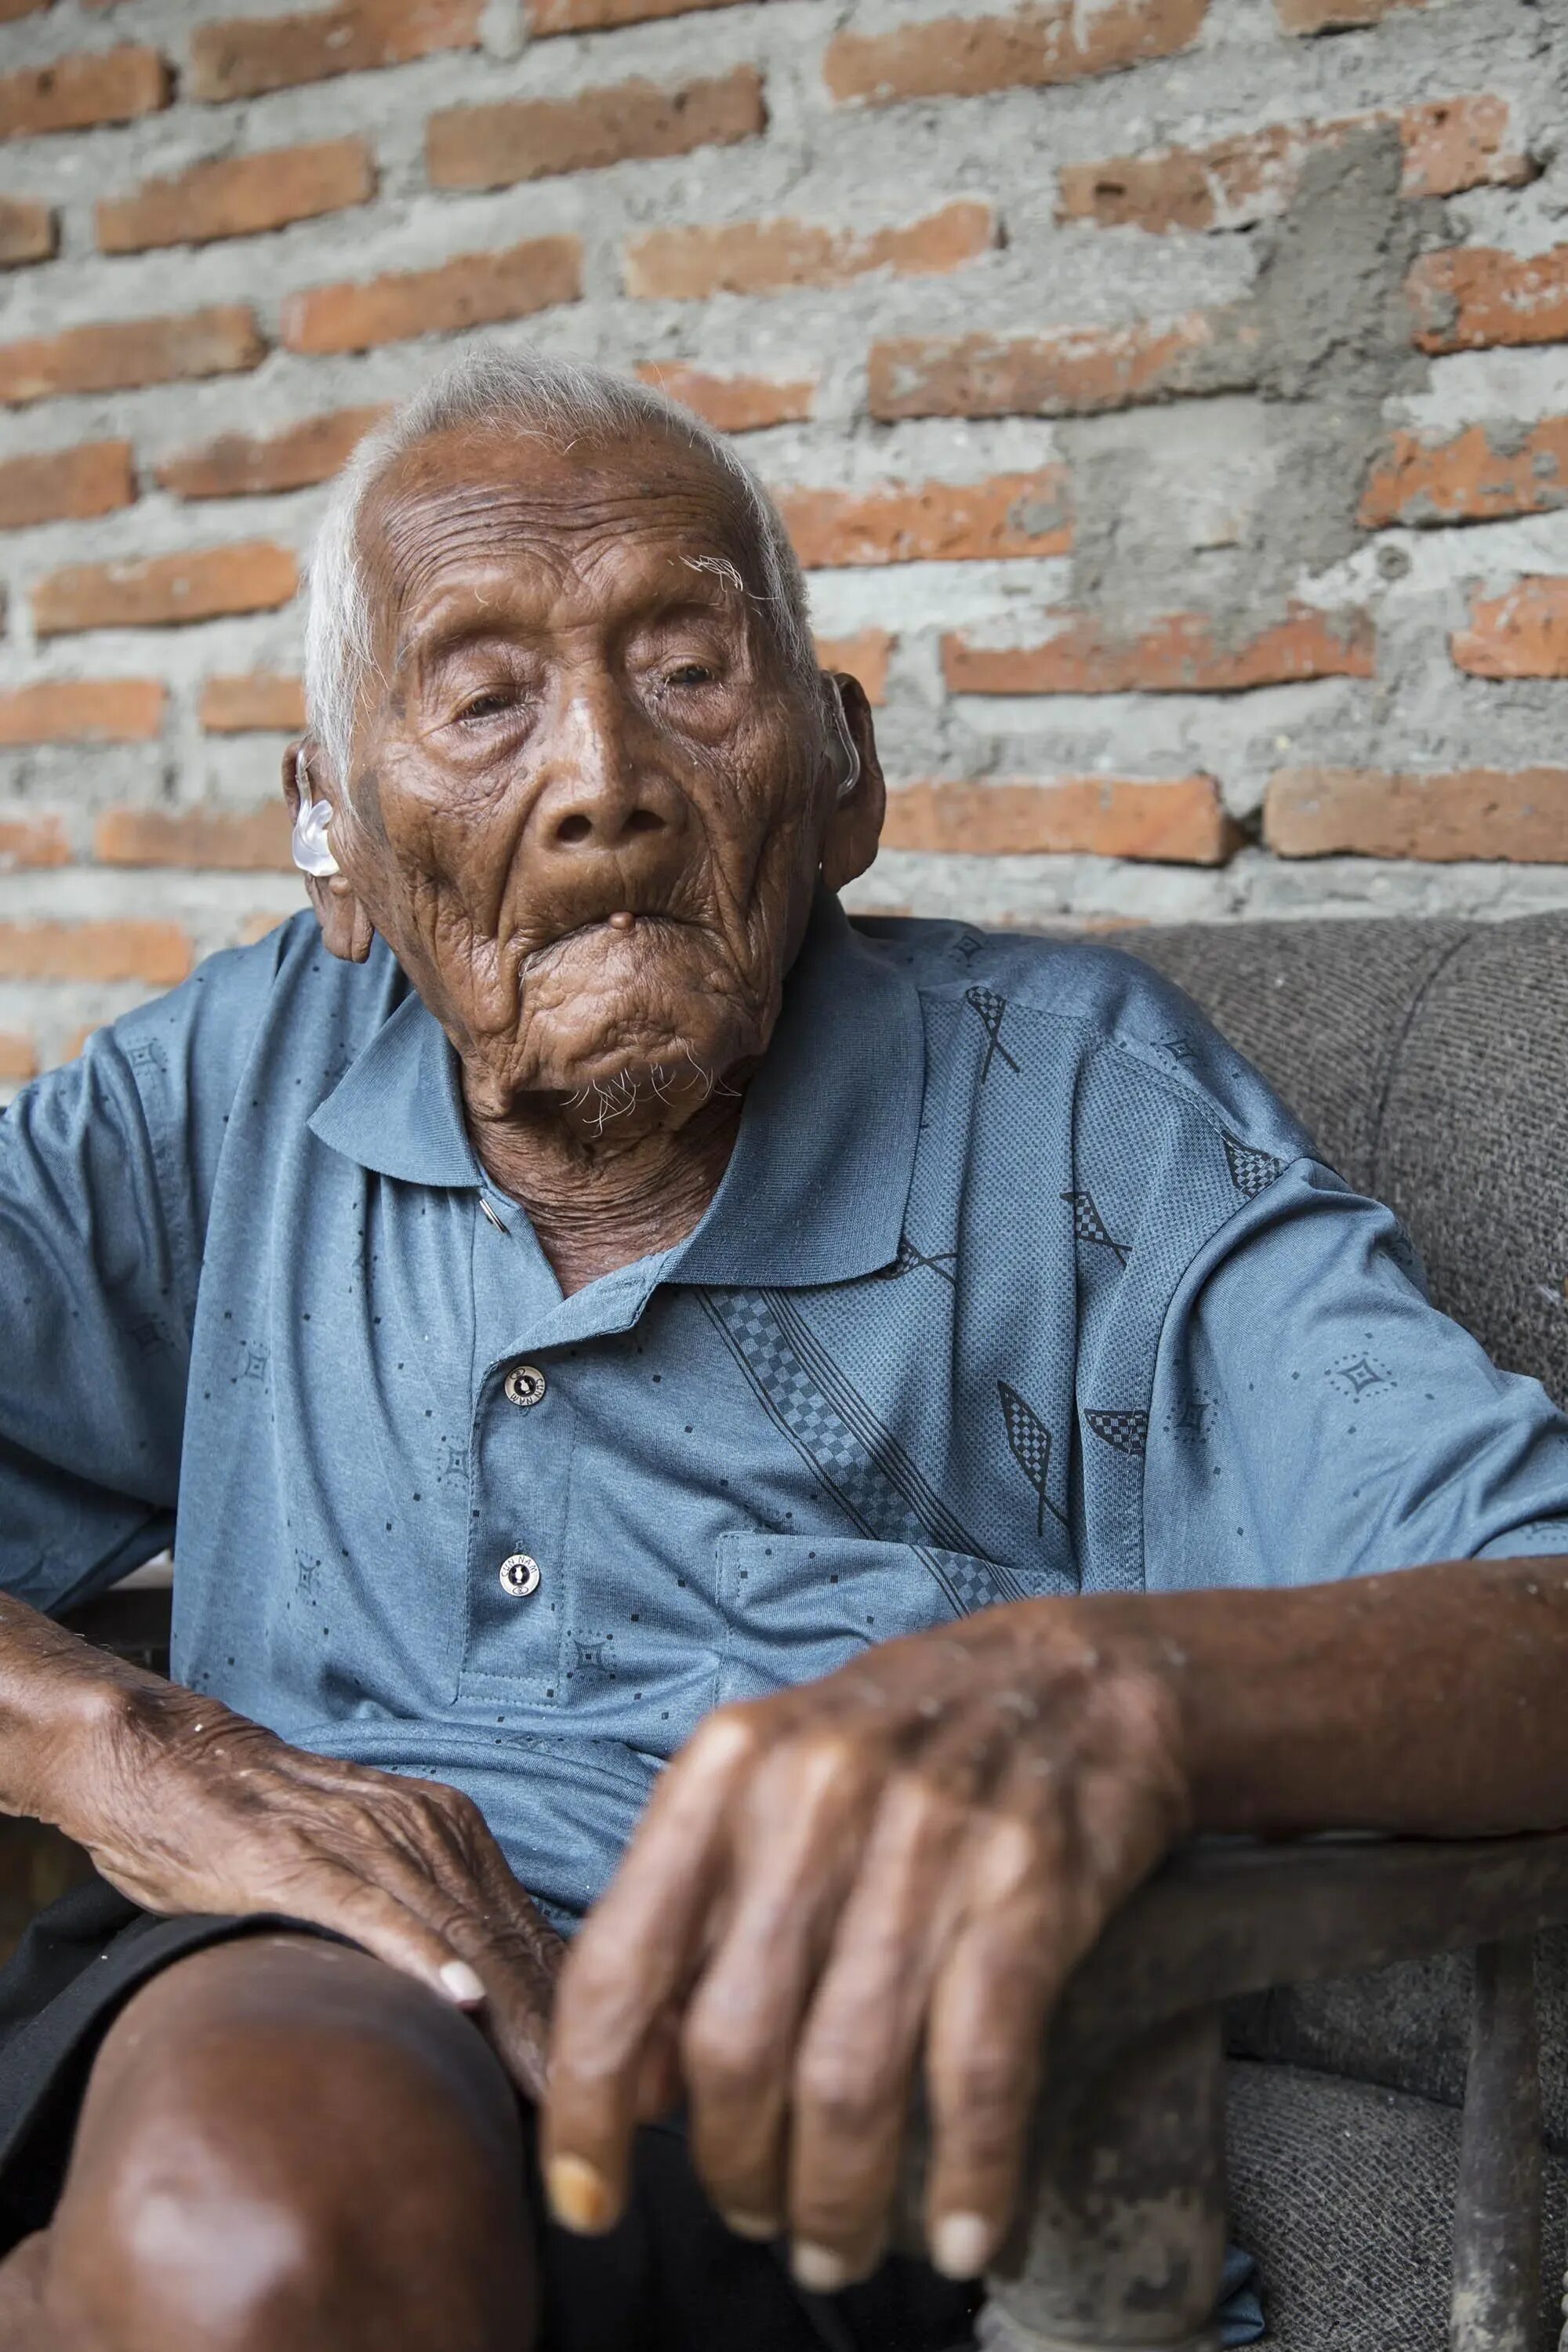 Максимально прожил человек. Сапарман Содимеджо долгожитель. Самый старый человек в мире Мбах.